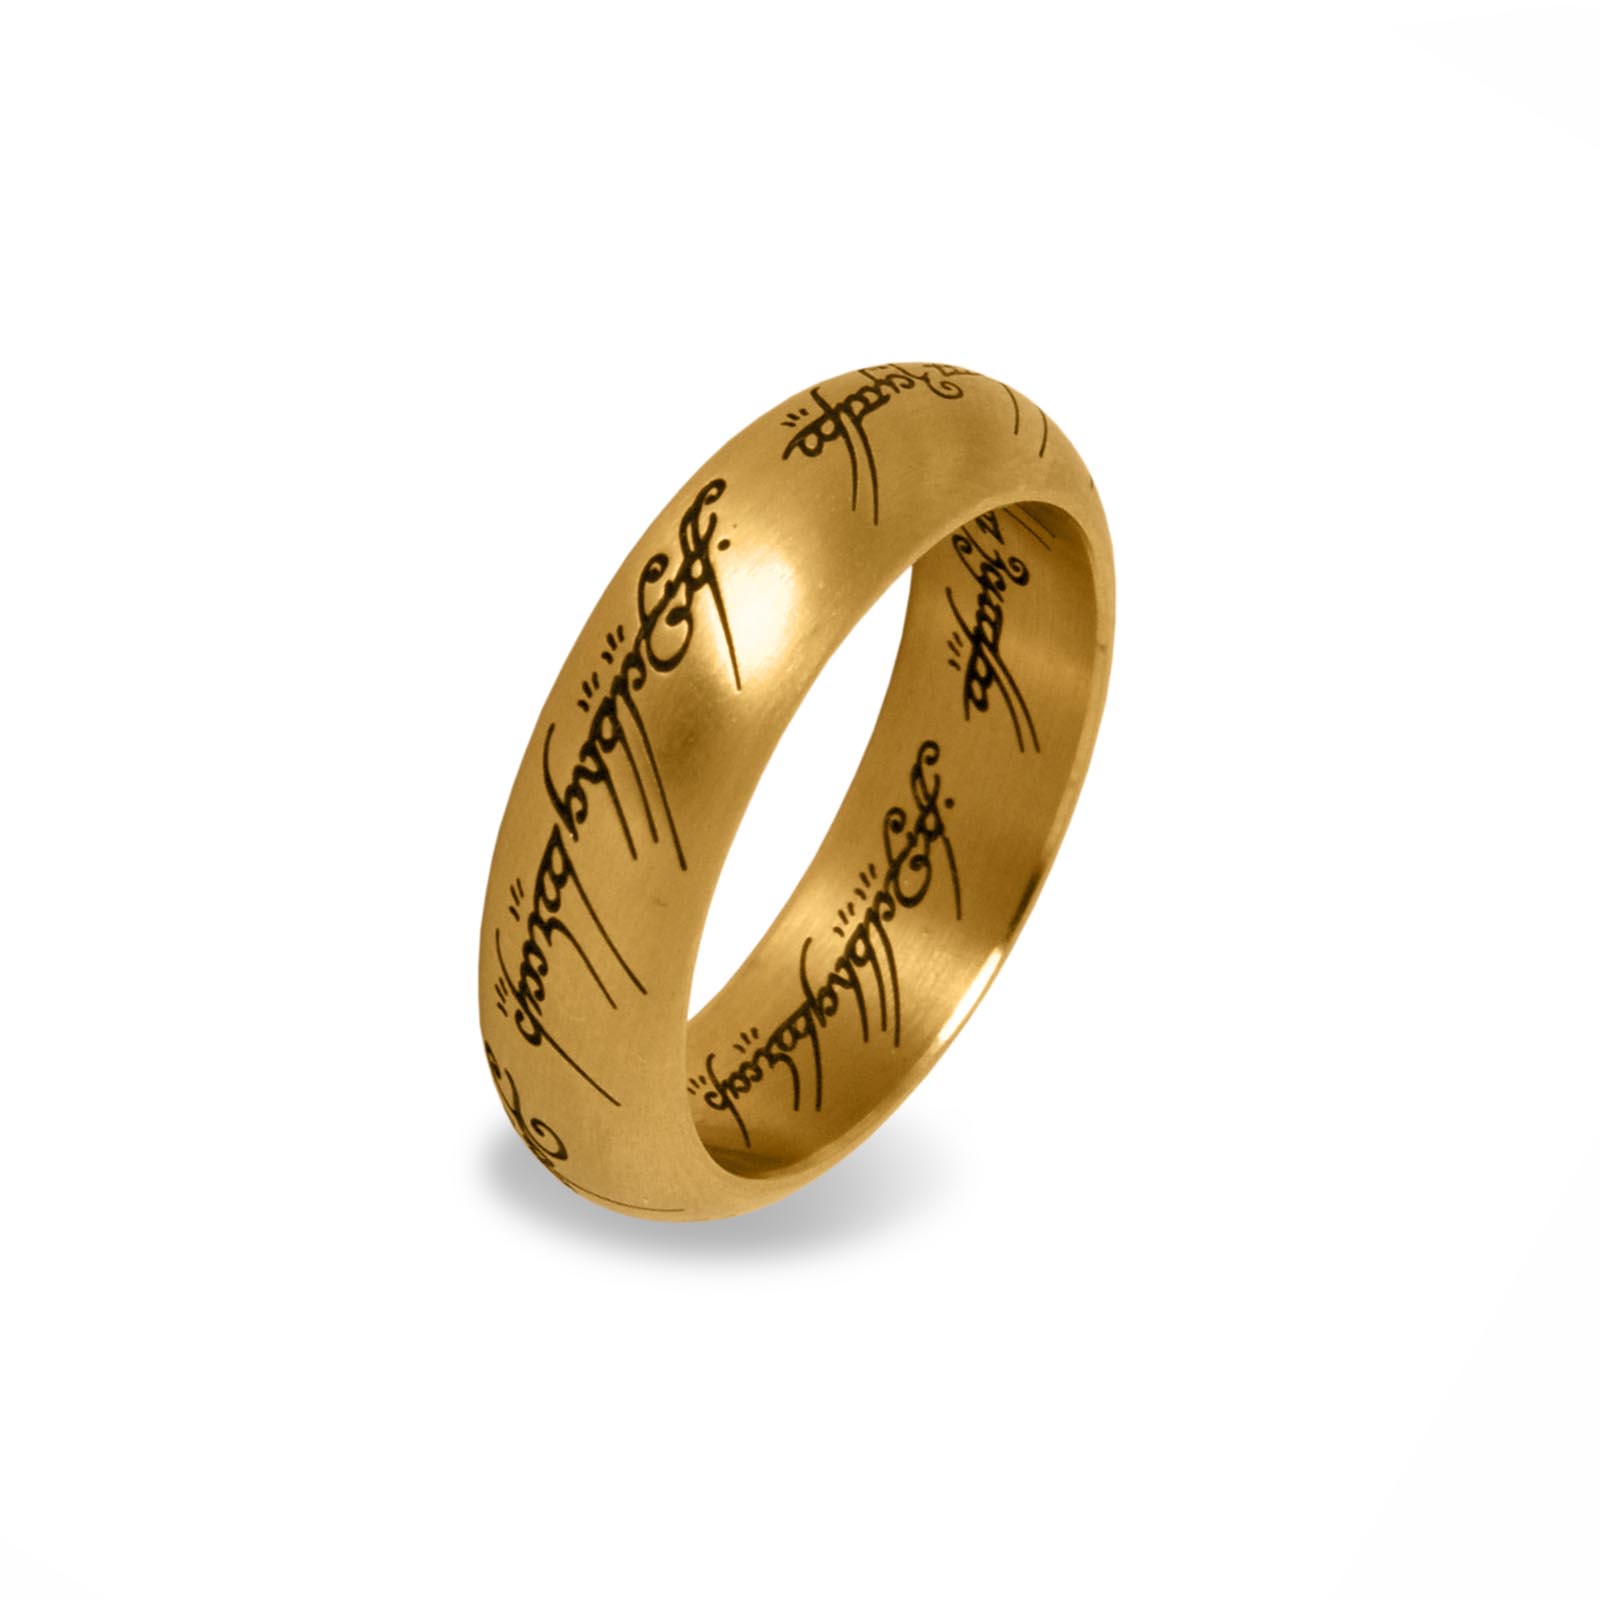 Herr der Ringe - Der Eine Ring im Schmuckdisplay, gold